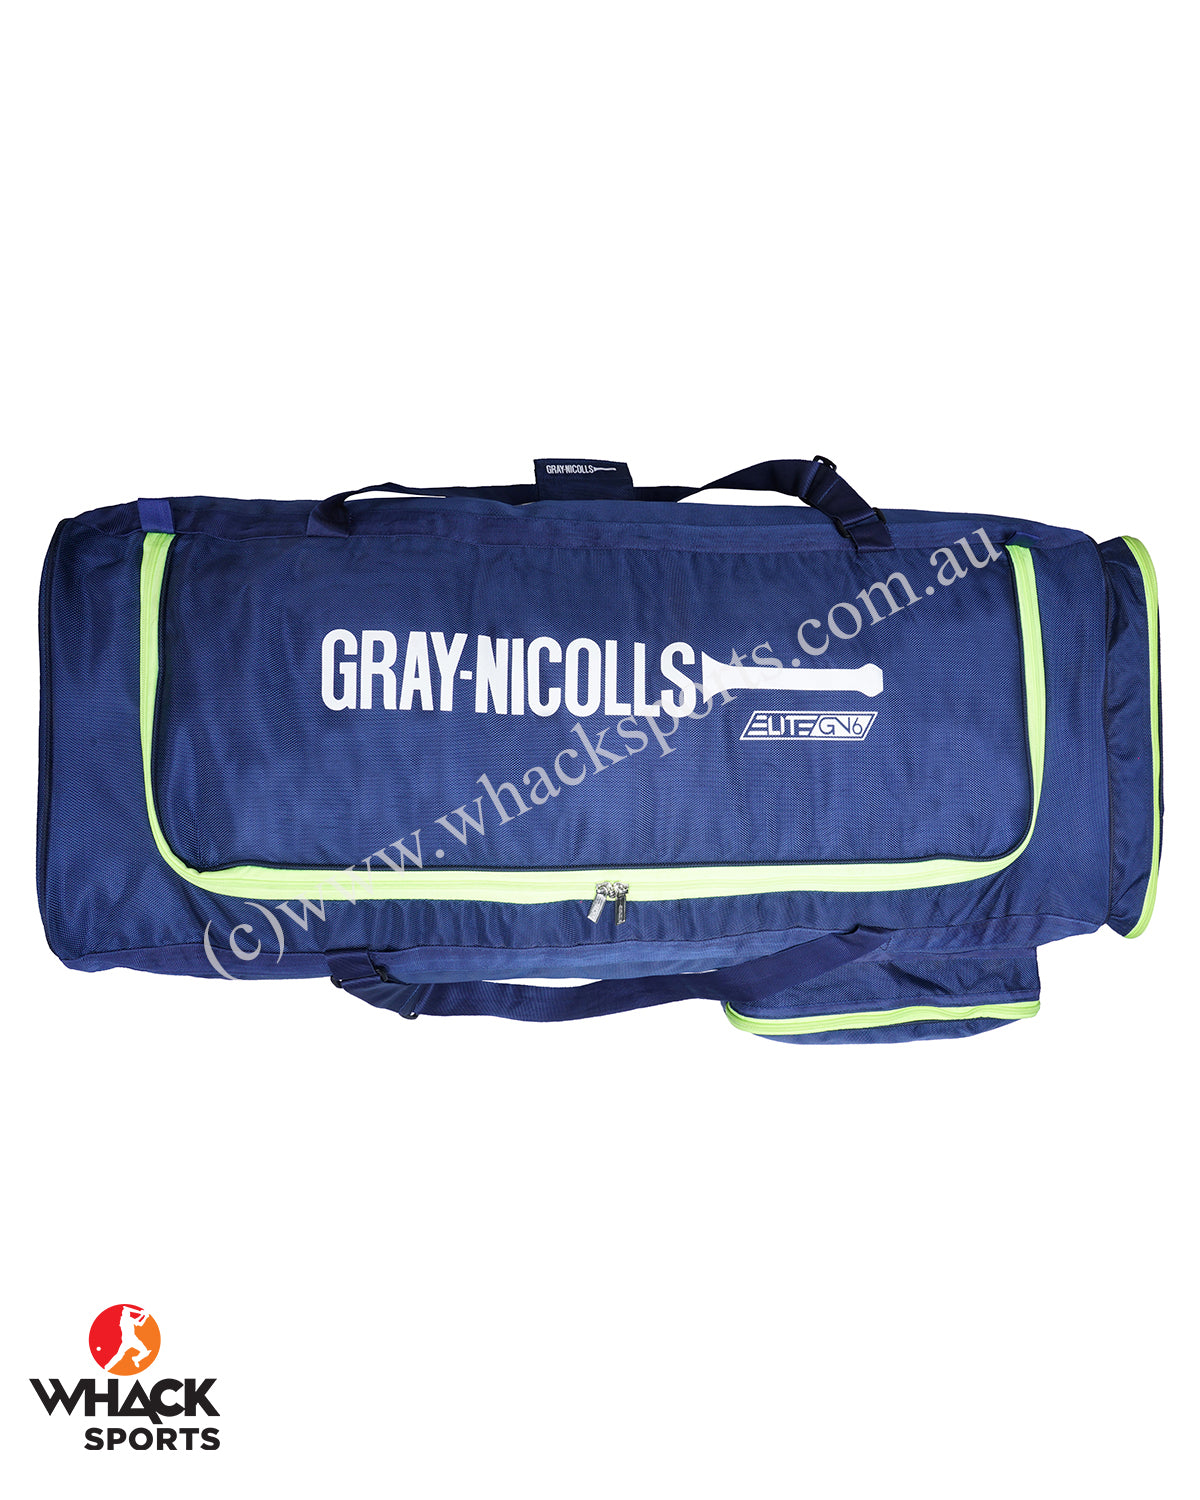 getpaddedup Ultra Wheelie Cricket Kit Bag (Red/Black)